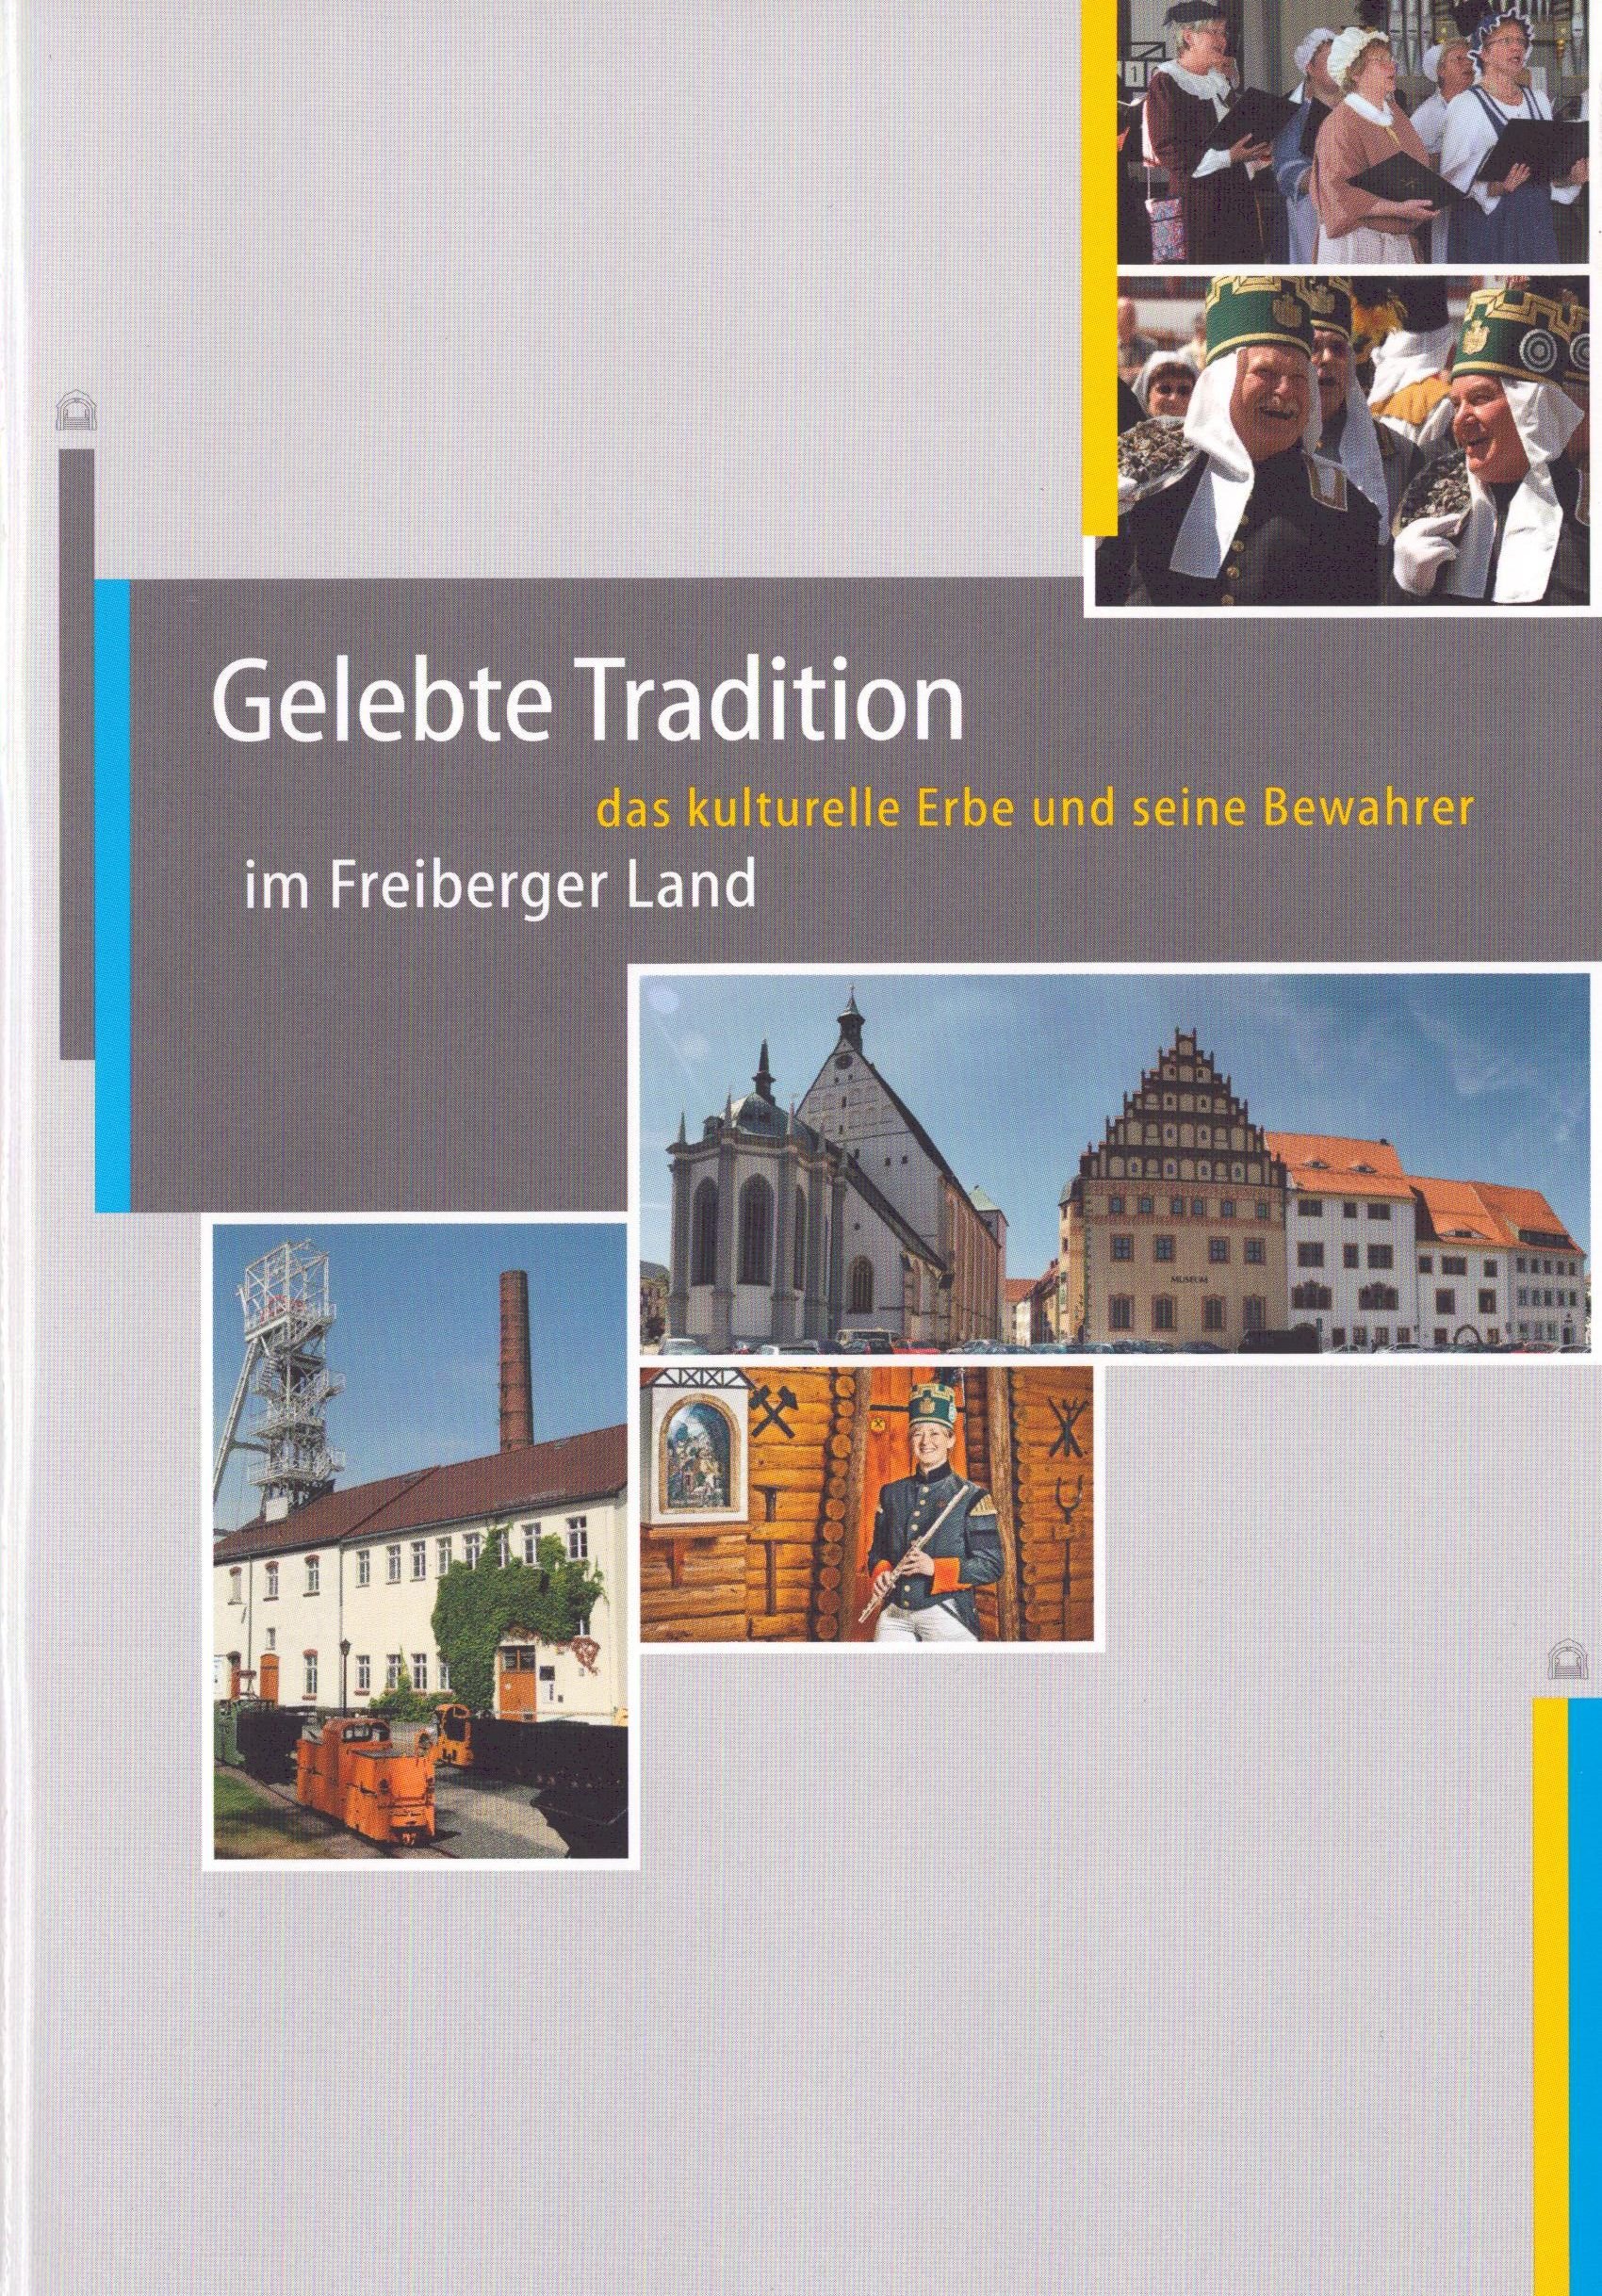 Gelebte Tradition. Das kulturelle Erbe und seine Bewahrer im Freiberger Land (Archiv SAXONIA-FREIBERG-STIFTUNG CC BY-NC-SA)